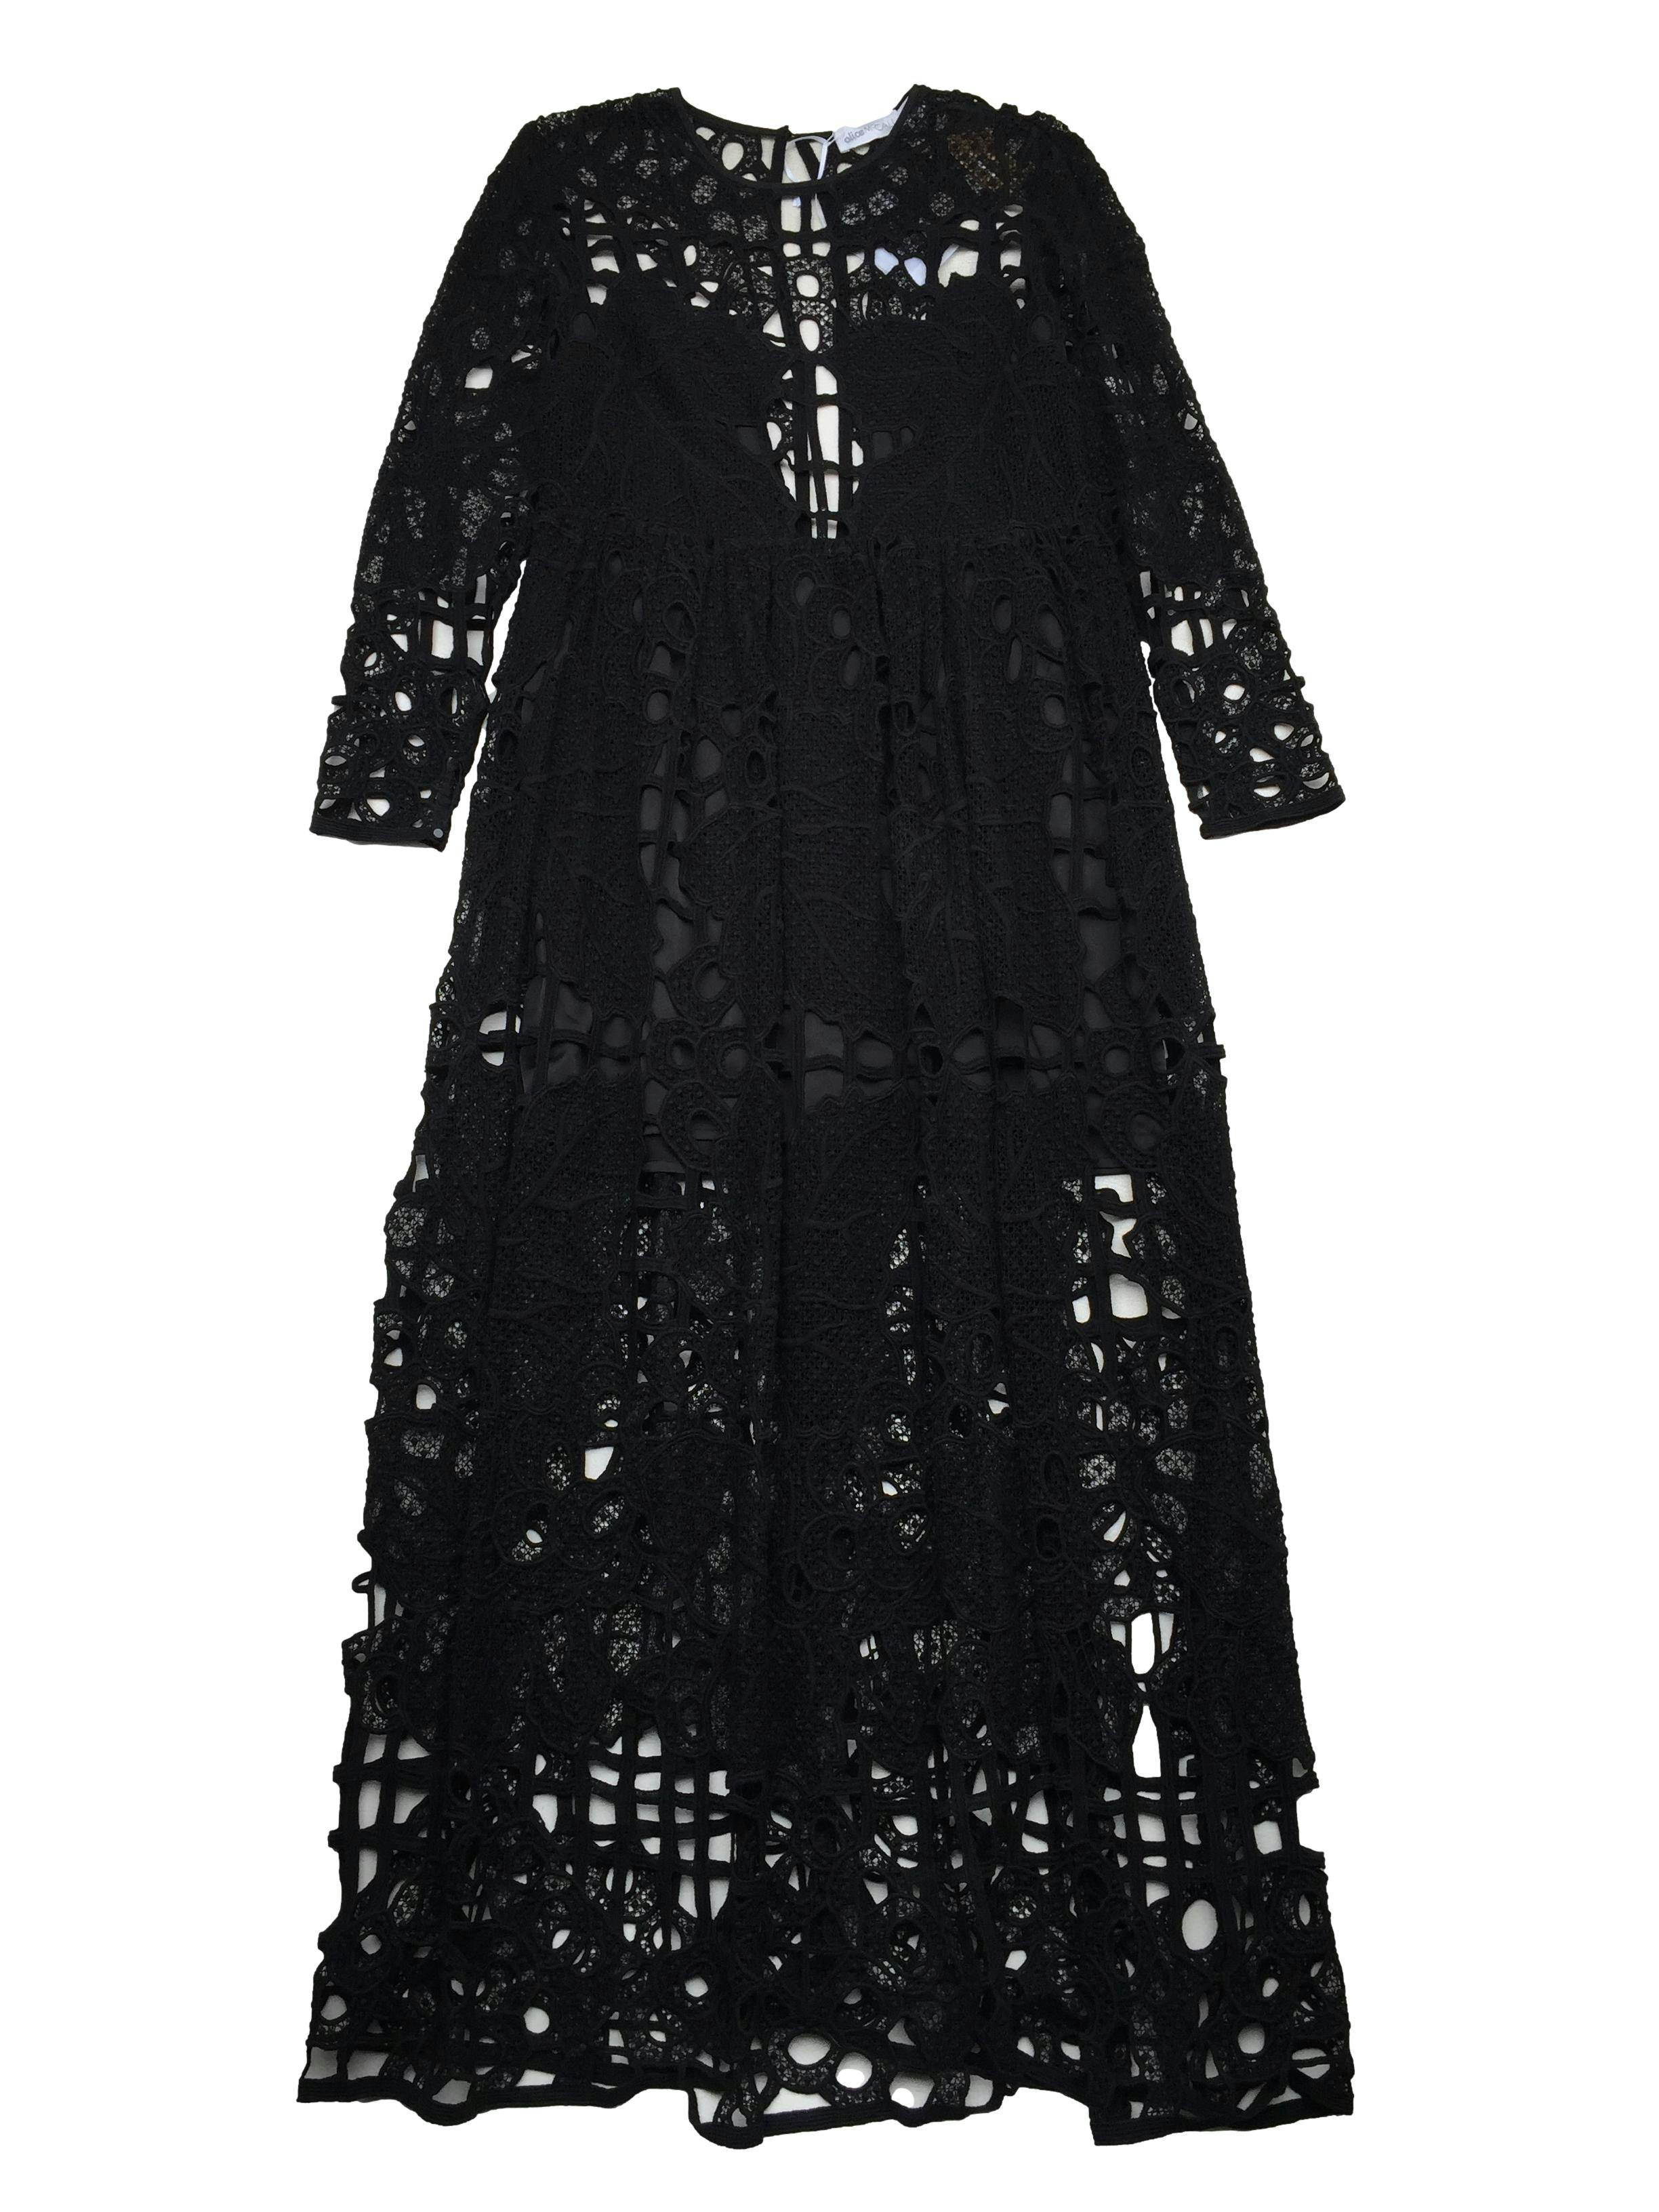 Vestido Alice MacCall de encaje negro 100% algodón con forro, abertura en espalda, botón y cierre invisible. Nuevo con etiqueta, precio original S/1500. Busto 100cm, Largo 145cm.